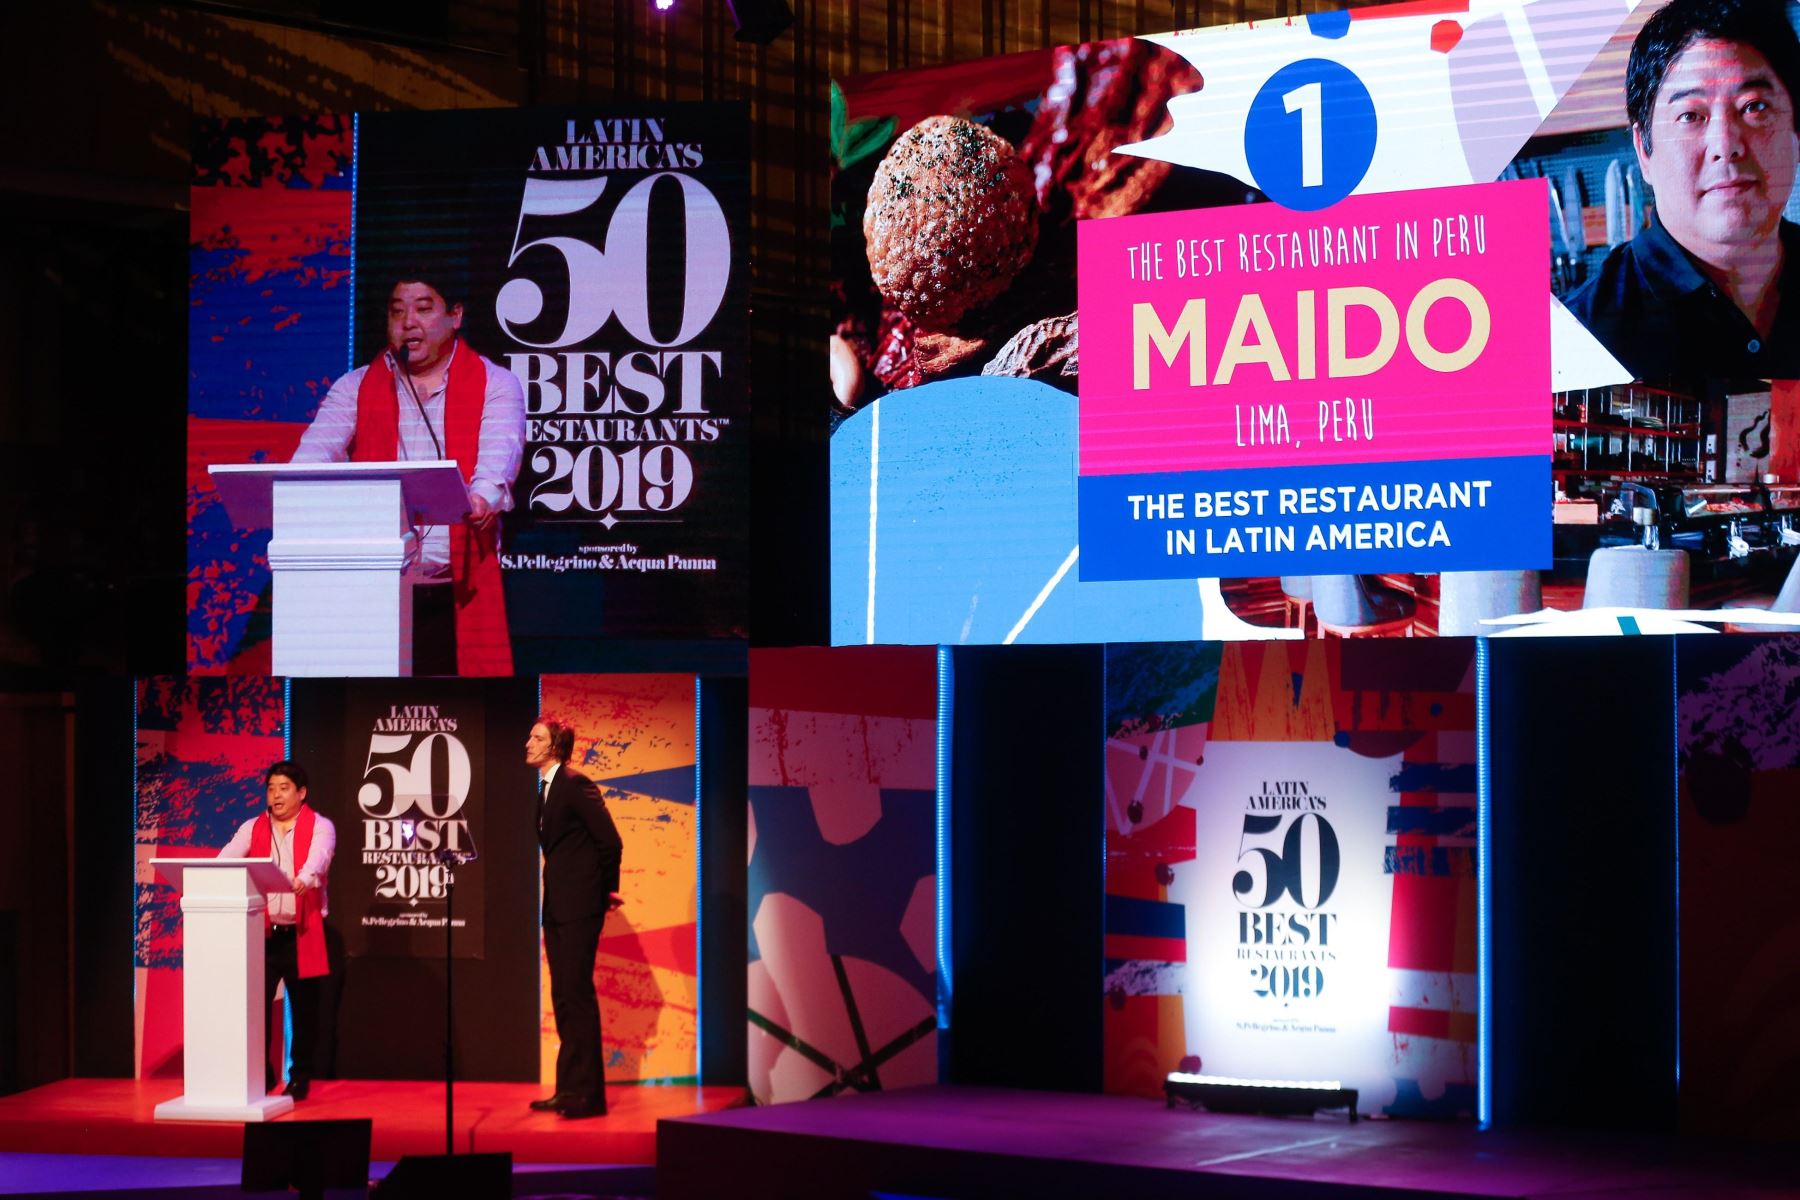 Mitsuharu Tsjumura celebra tras obtener el primer lugar en la entrega de los Latin Americas 50 best Restaurants, por su restaurante Maido de Peru, este jueves, en la Usina del Arte, en Buenos Aires. Foto: EFE